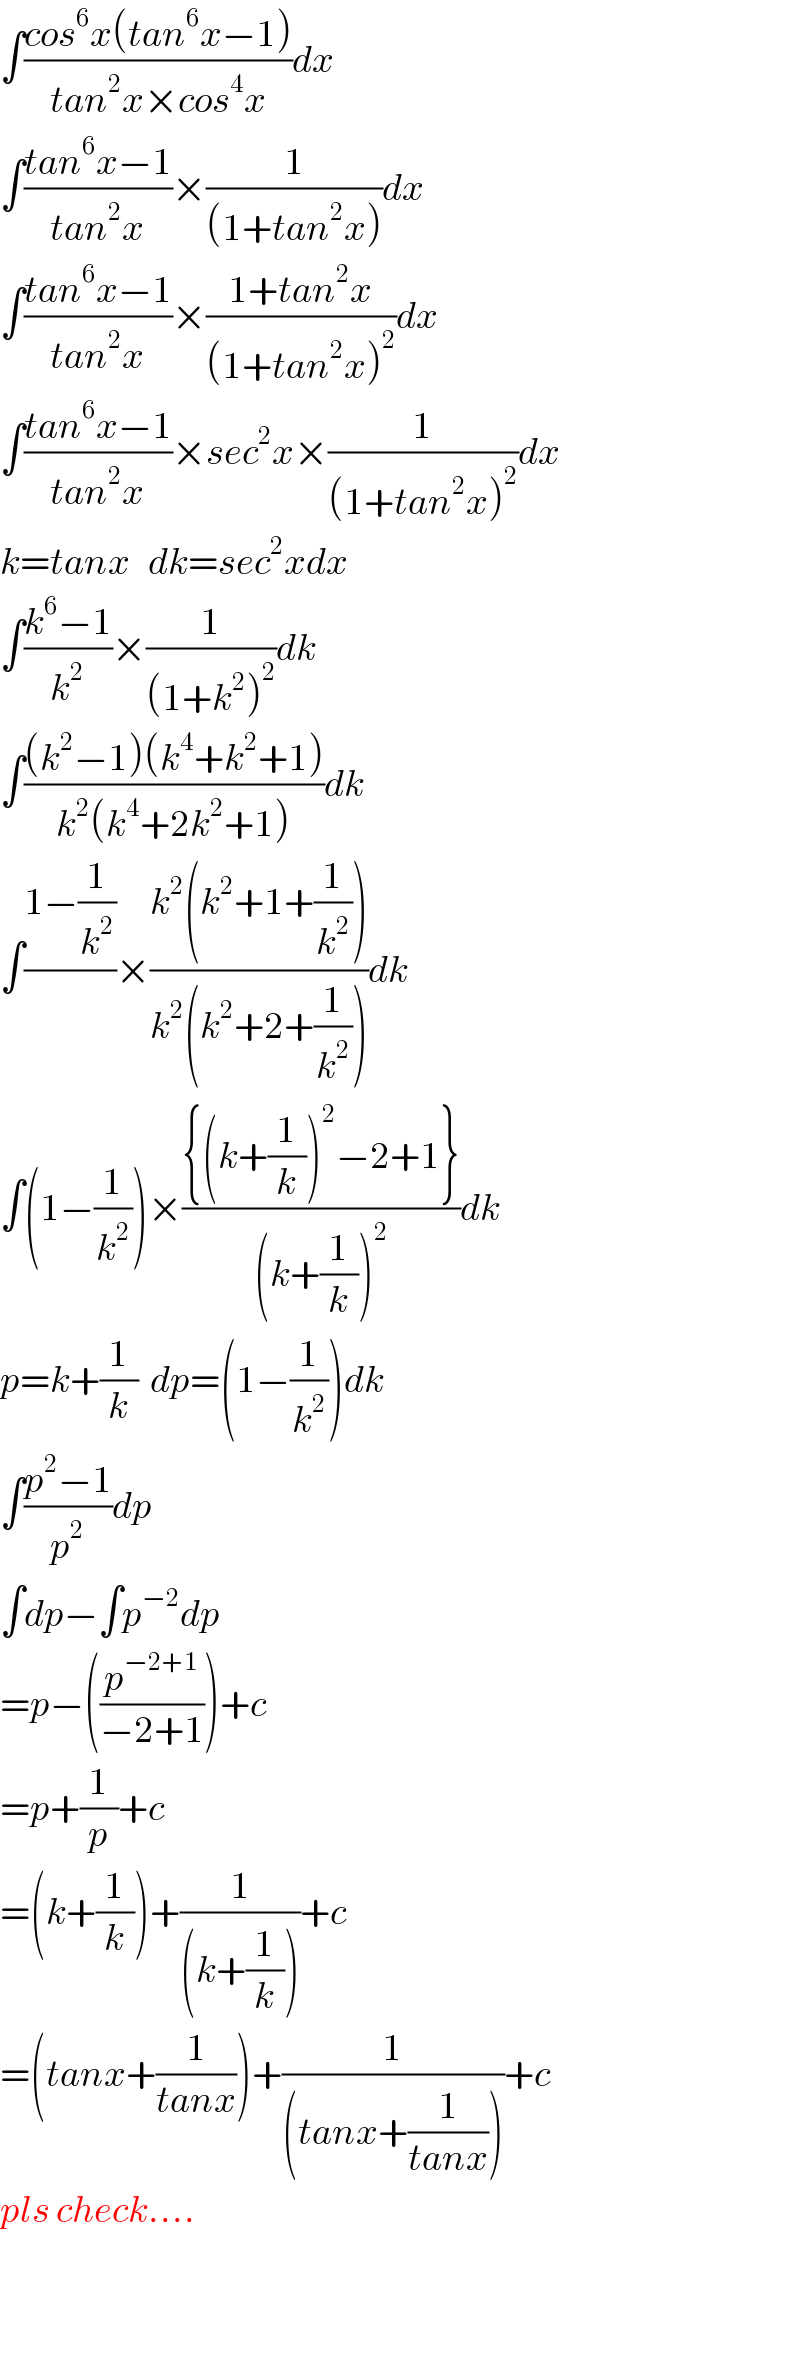 ∫((cos^6 x(tan^6 x−1))/(tan^2 x×cos^4 x))dx  ∫((tan^6 x−1)/(tan^2 x))×(1/((1+tan^2 x)))dx  ∫((tan^6 x−1)/(tan^2 x))×((1+tan^2 x)/((1+tan^2 x)^2 ))dx  ∫((tan^6 x−1)/(tan^2 x))×sec^2 x×(1/((1+tan^2 x)^2 ))dx  k=tanx   dk=sec^2 xdx  ∫((k^6 −1)/k^2 )×(1/((1+k^2 )^2 ))dk  ∫(((k^2 −1)(k^4 +k^2 +1))/(k^2 (k^4 +2k^2 +1)))dk  ∫((1−(1/k^2 ))/)×((k^2 (k^2 +1+(1/k^2 )))/(k^2 (k^2 +2+(1/k^2 ))))dk  ∫(1−(1/k^2 ))×(({(k+(1/k))^2 −2+1})/((k+(1/k))^2 ))dk  p=k+(1/k)  dp=(1−(1/k^2 ))dk  ∫((p^2 −1)/p^2 )dp  ∫dp−∫p^(−2) dp  =p−((p^(−2+1) /(−2+1)))+c  =p+(1/p)+c  =(k+(1/k))+(1/((k+(1/k))))+c  =(tanx+(1/(tanx)))+(1/((tanx+(1/(tanx)))))+c  pls check....      